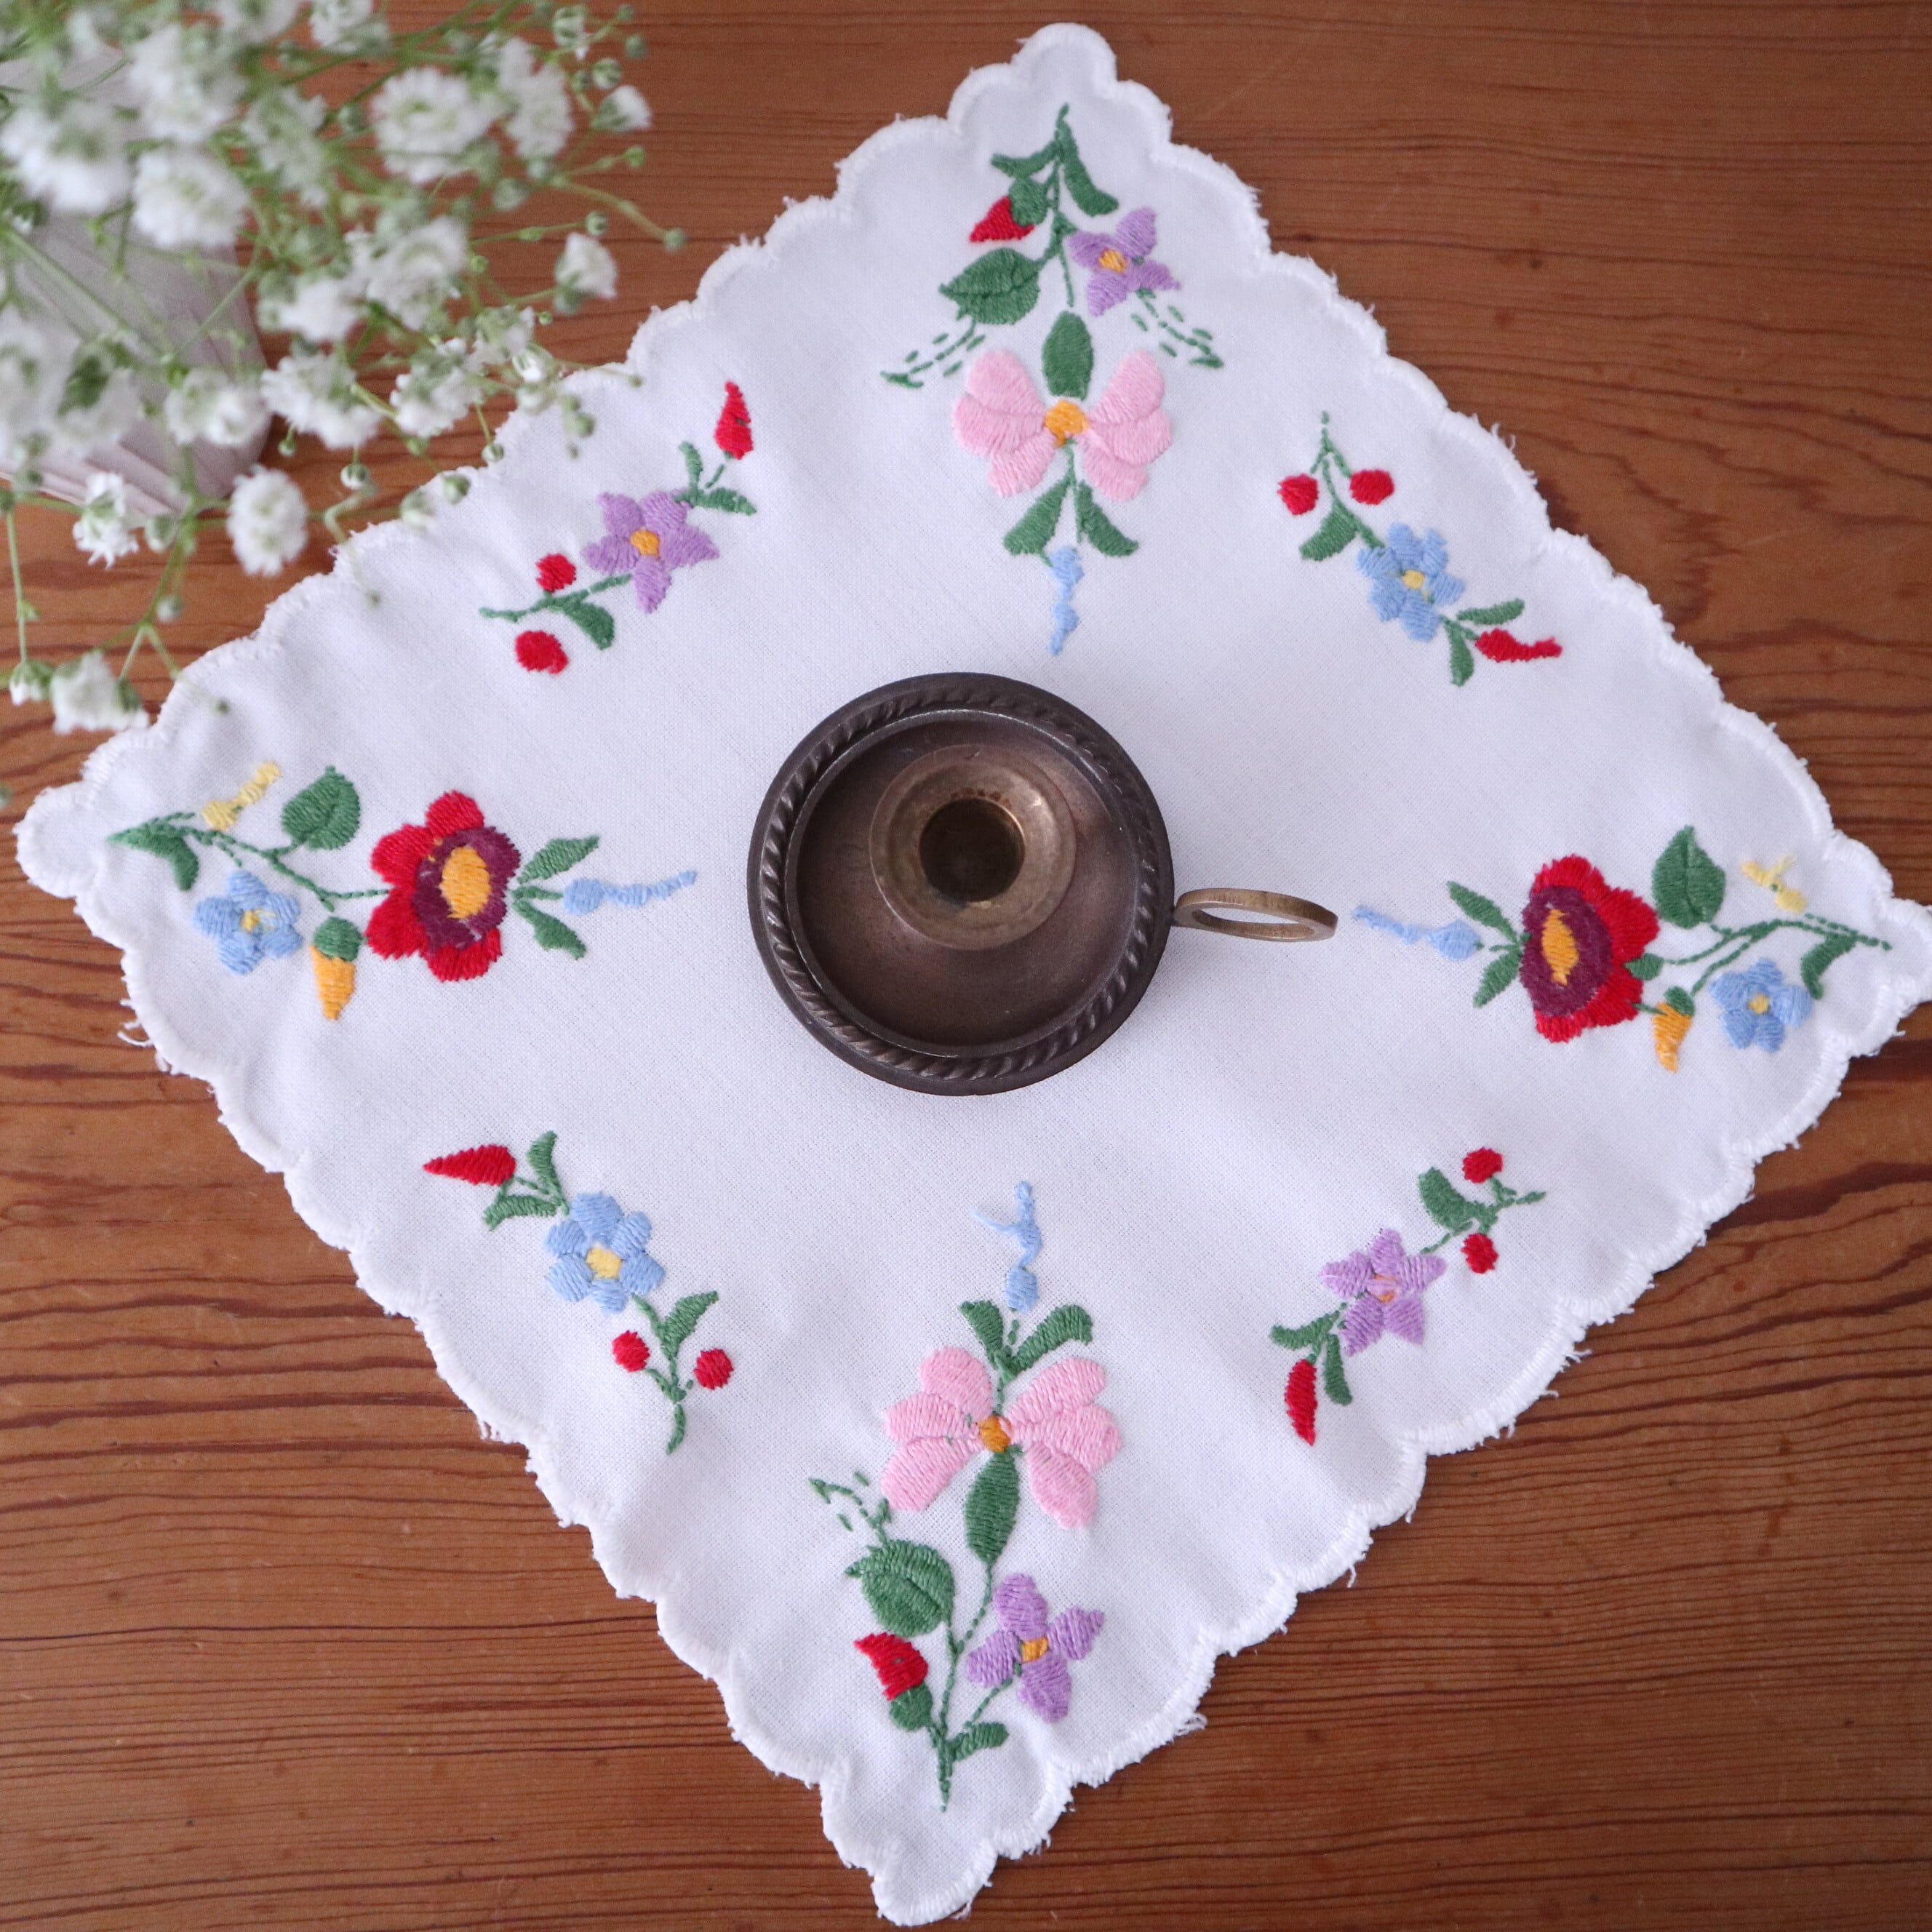 【ハンガリーの伝統刺繍】華やかな色づかいカロチャ刺繍のドイリー /ヴィンテージ・ハンガリー